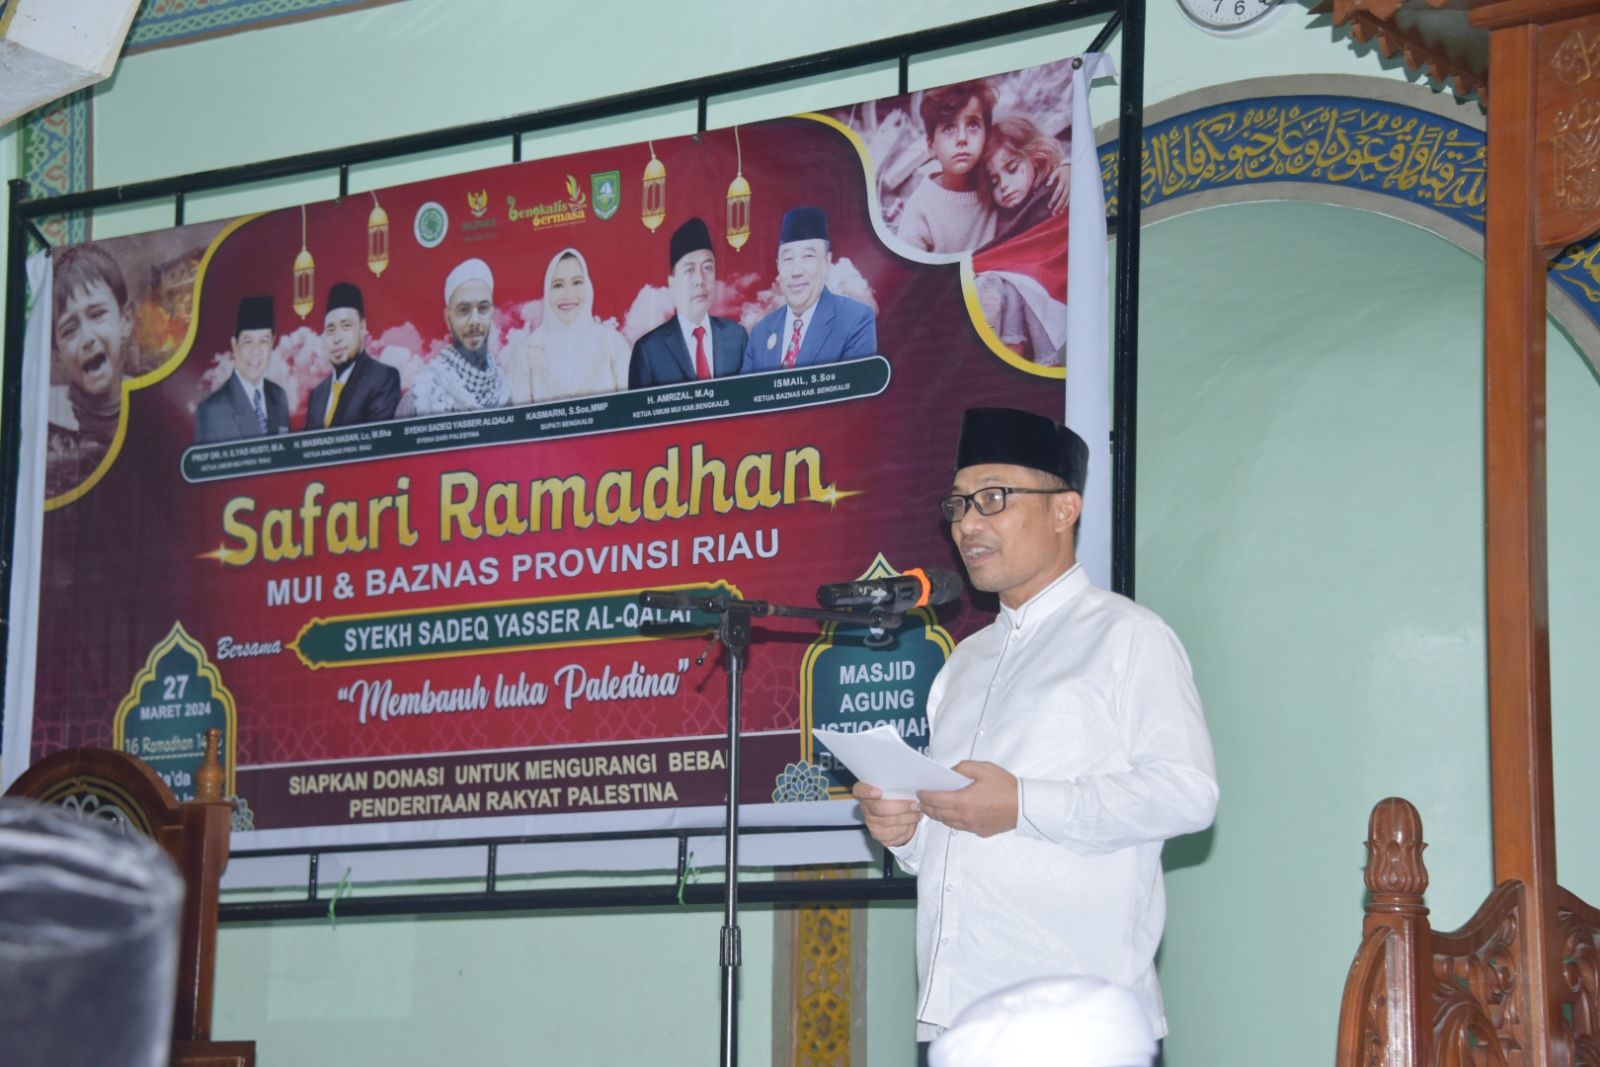 Bupati Kasmarni Sambut Baik Safari Ramadhan MUI dan Baznas Riau, Dalam Rangka Basuh Luka Palestina